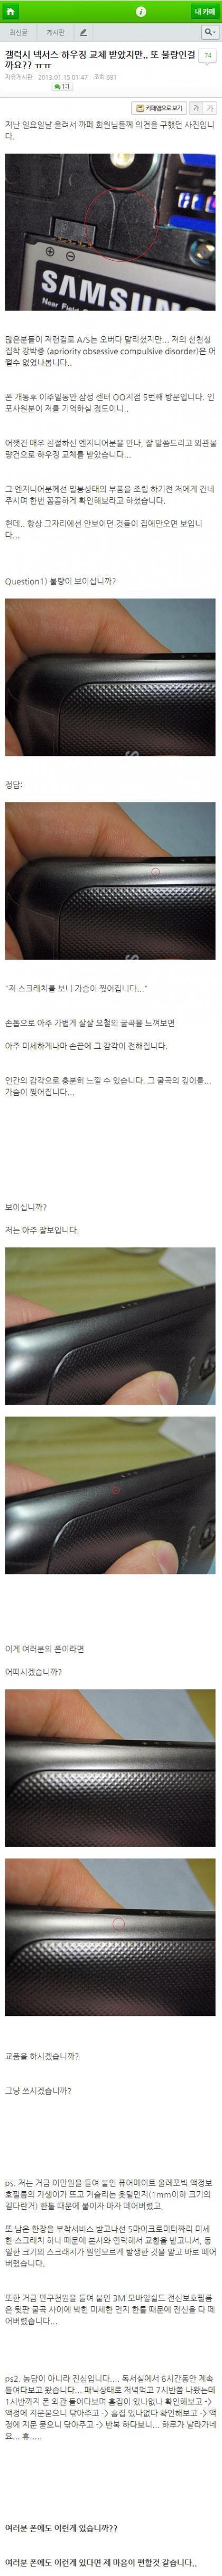 삼성 AS 후기 레전드.jpg